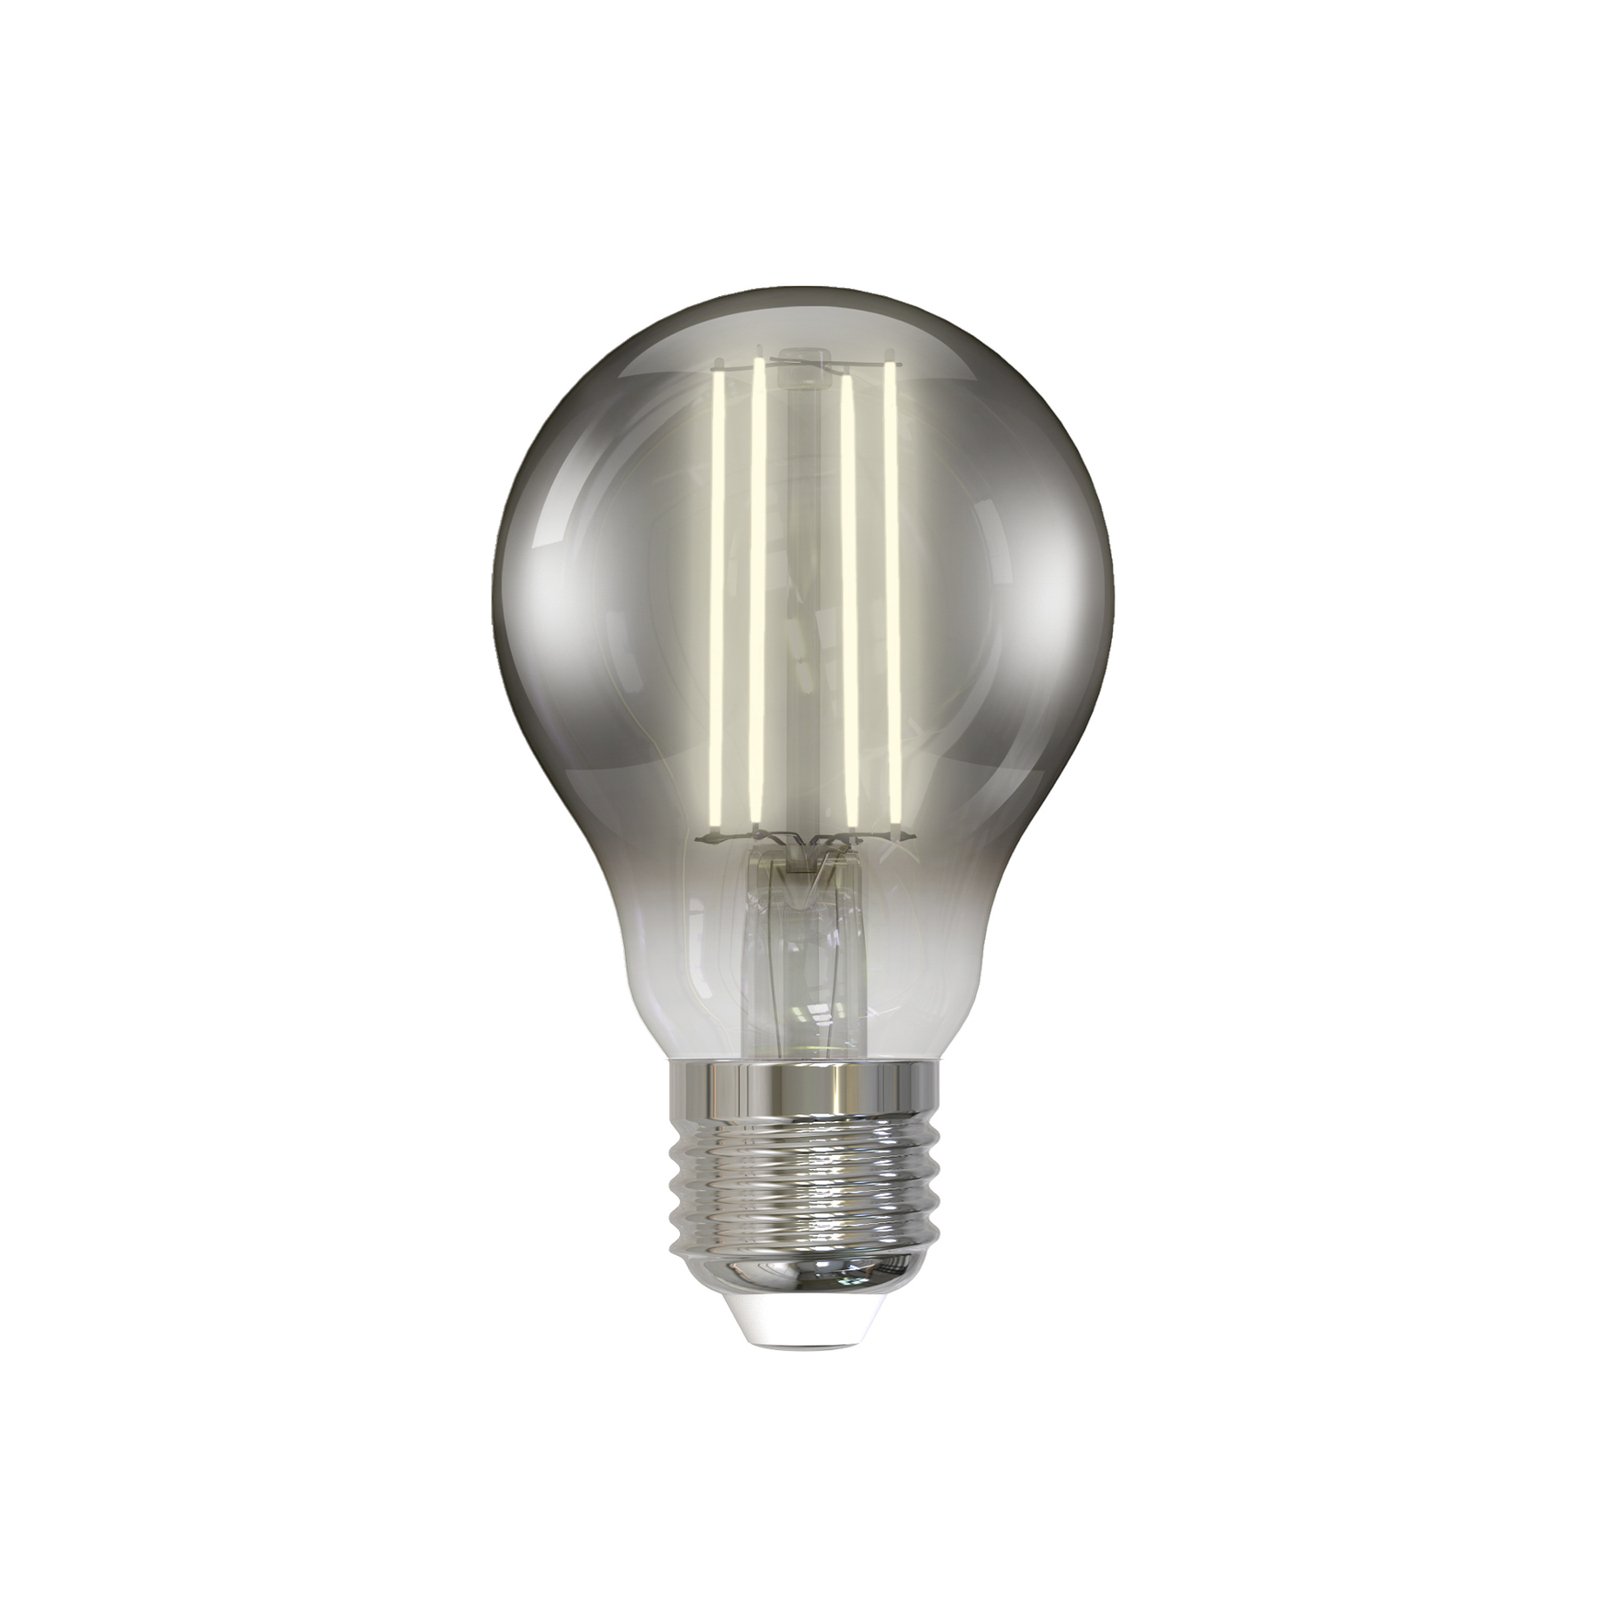 Smart LED-Filament rauchgrau E27 A60 WLAN 4,9W